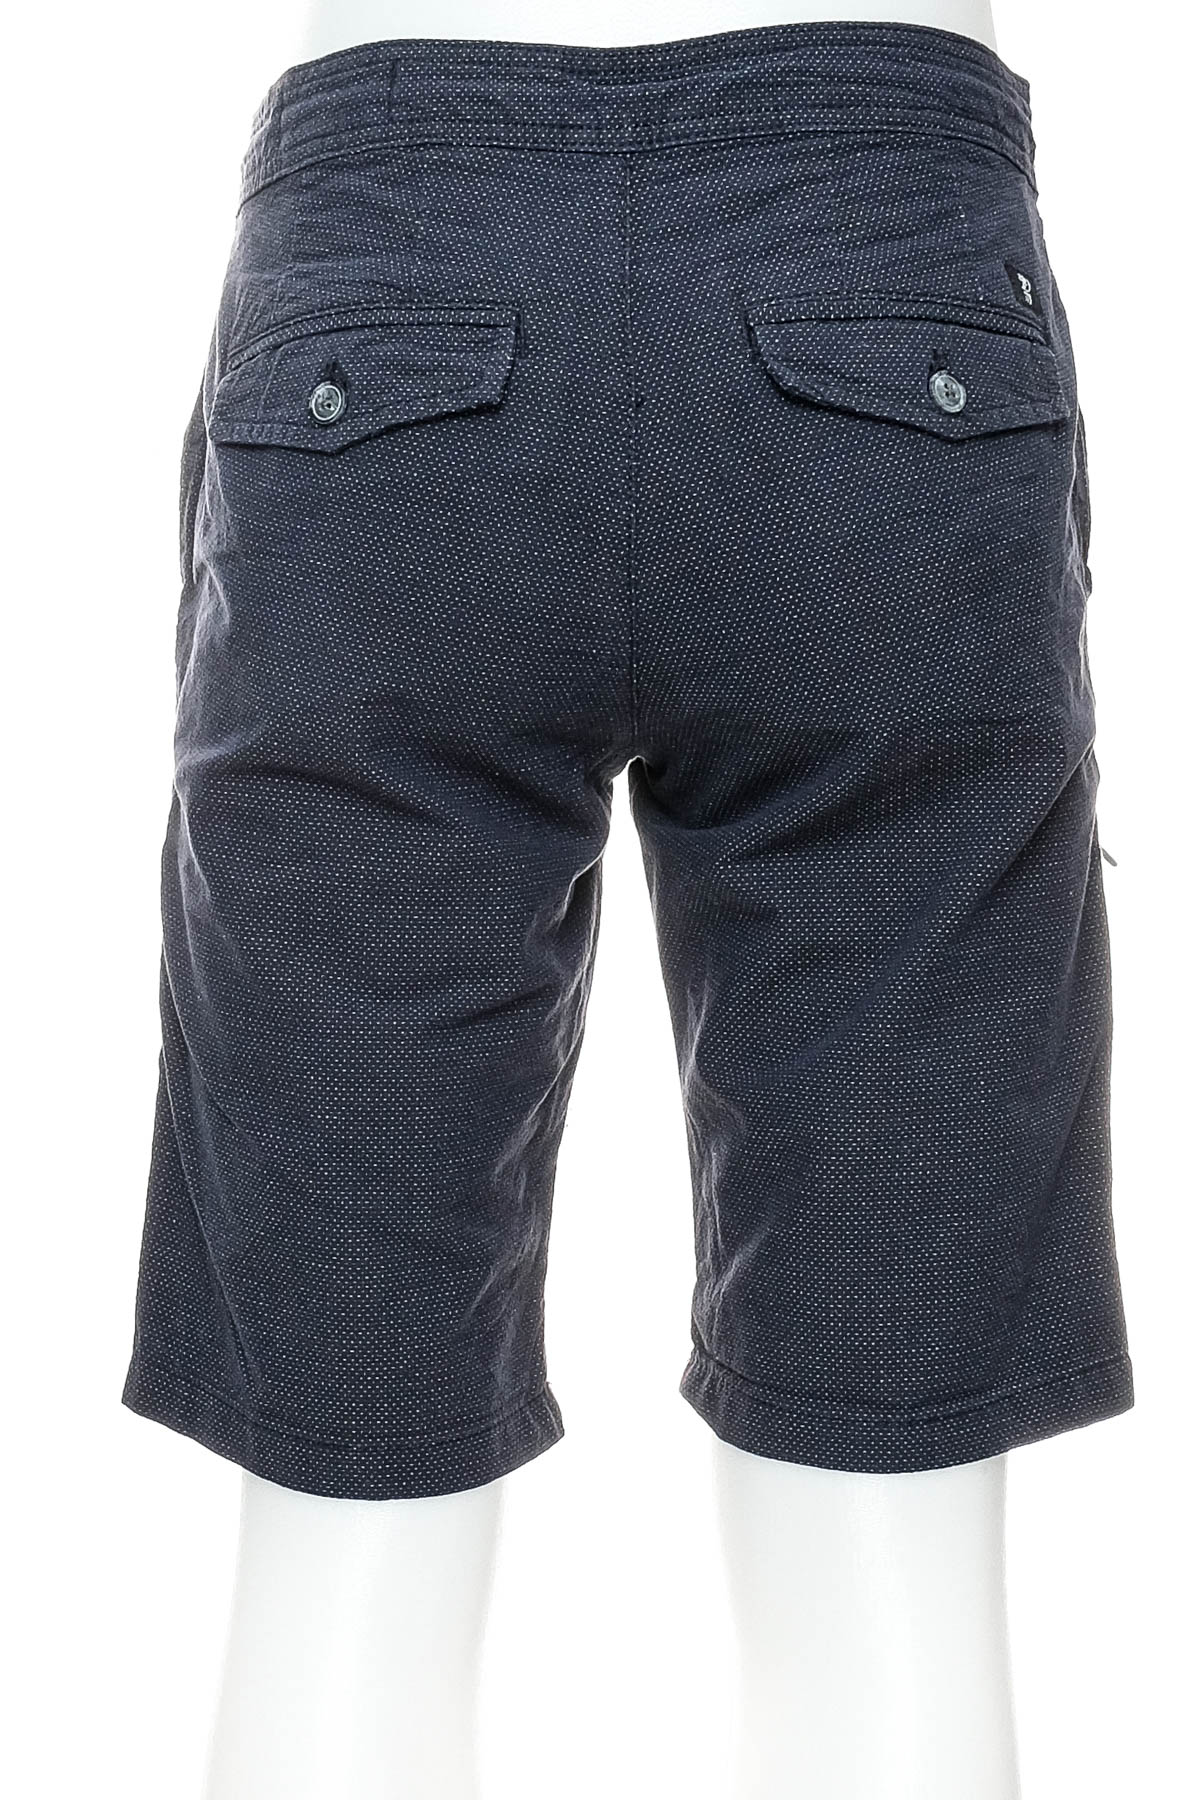 Men's shorts - TOM TAILOR Denim - 1